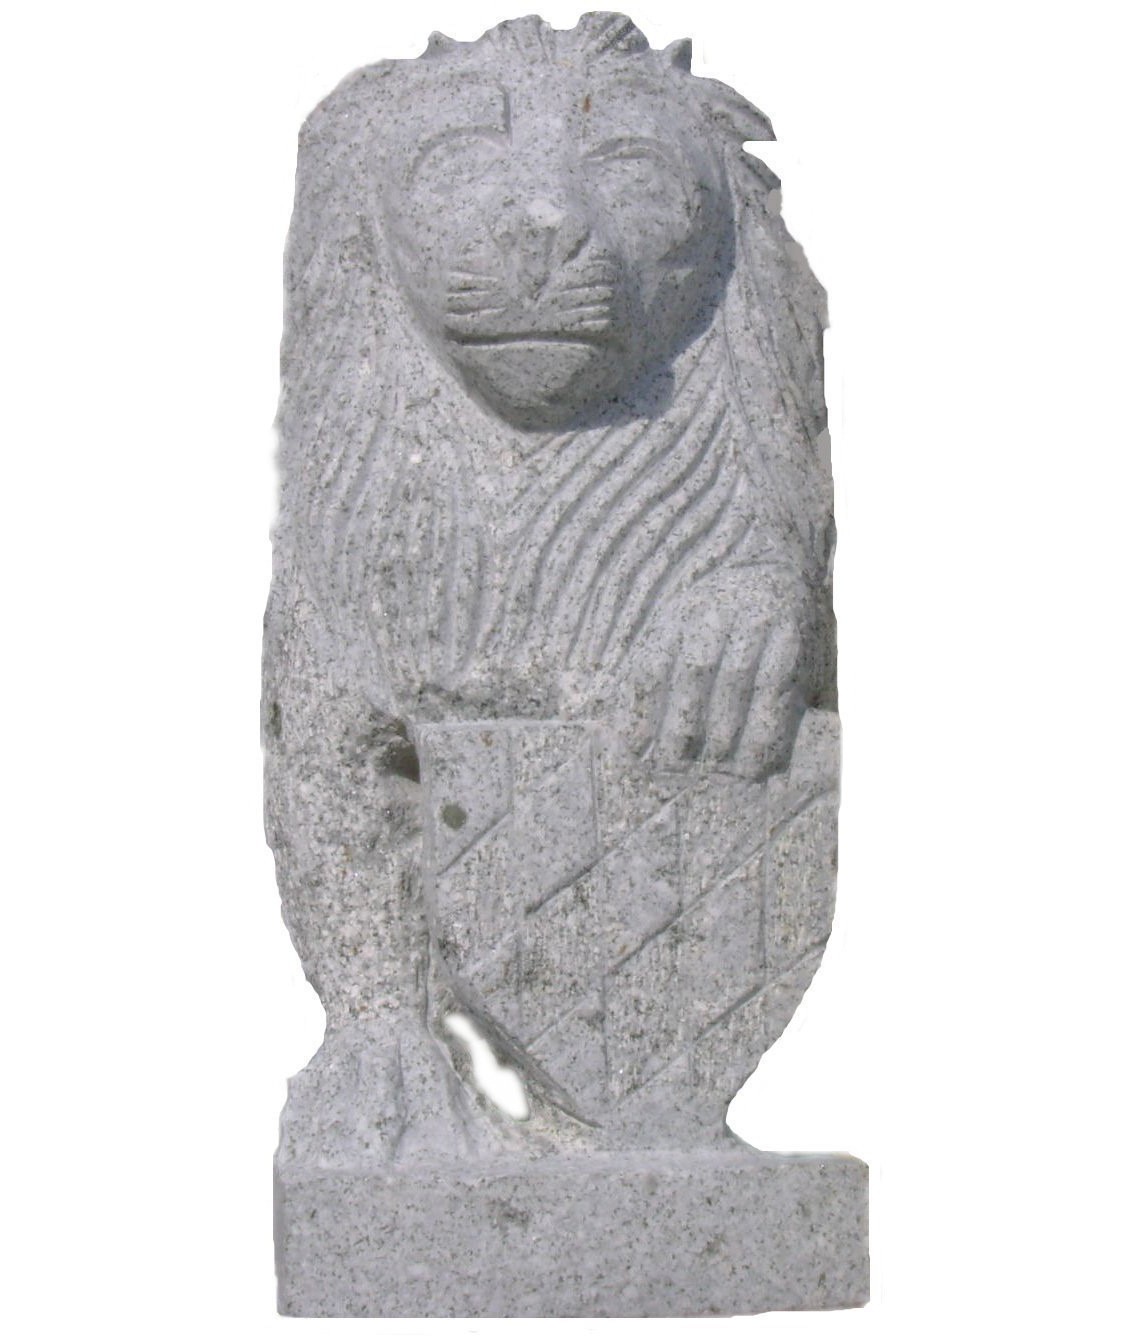 Bayerischer Löwe mit Wappen, Höhe ca. 60 cm, Granit grau